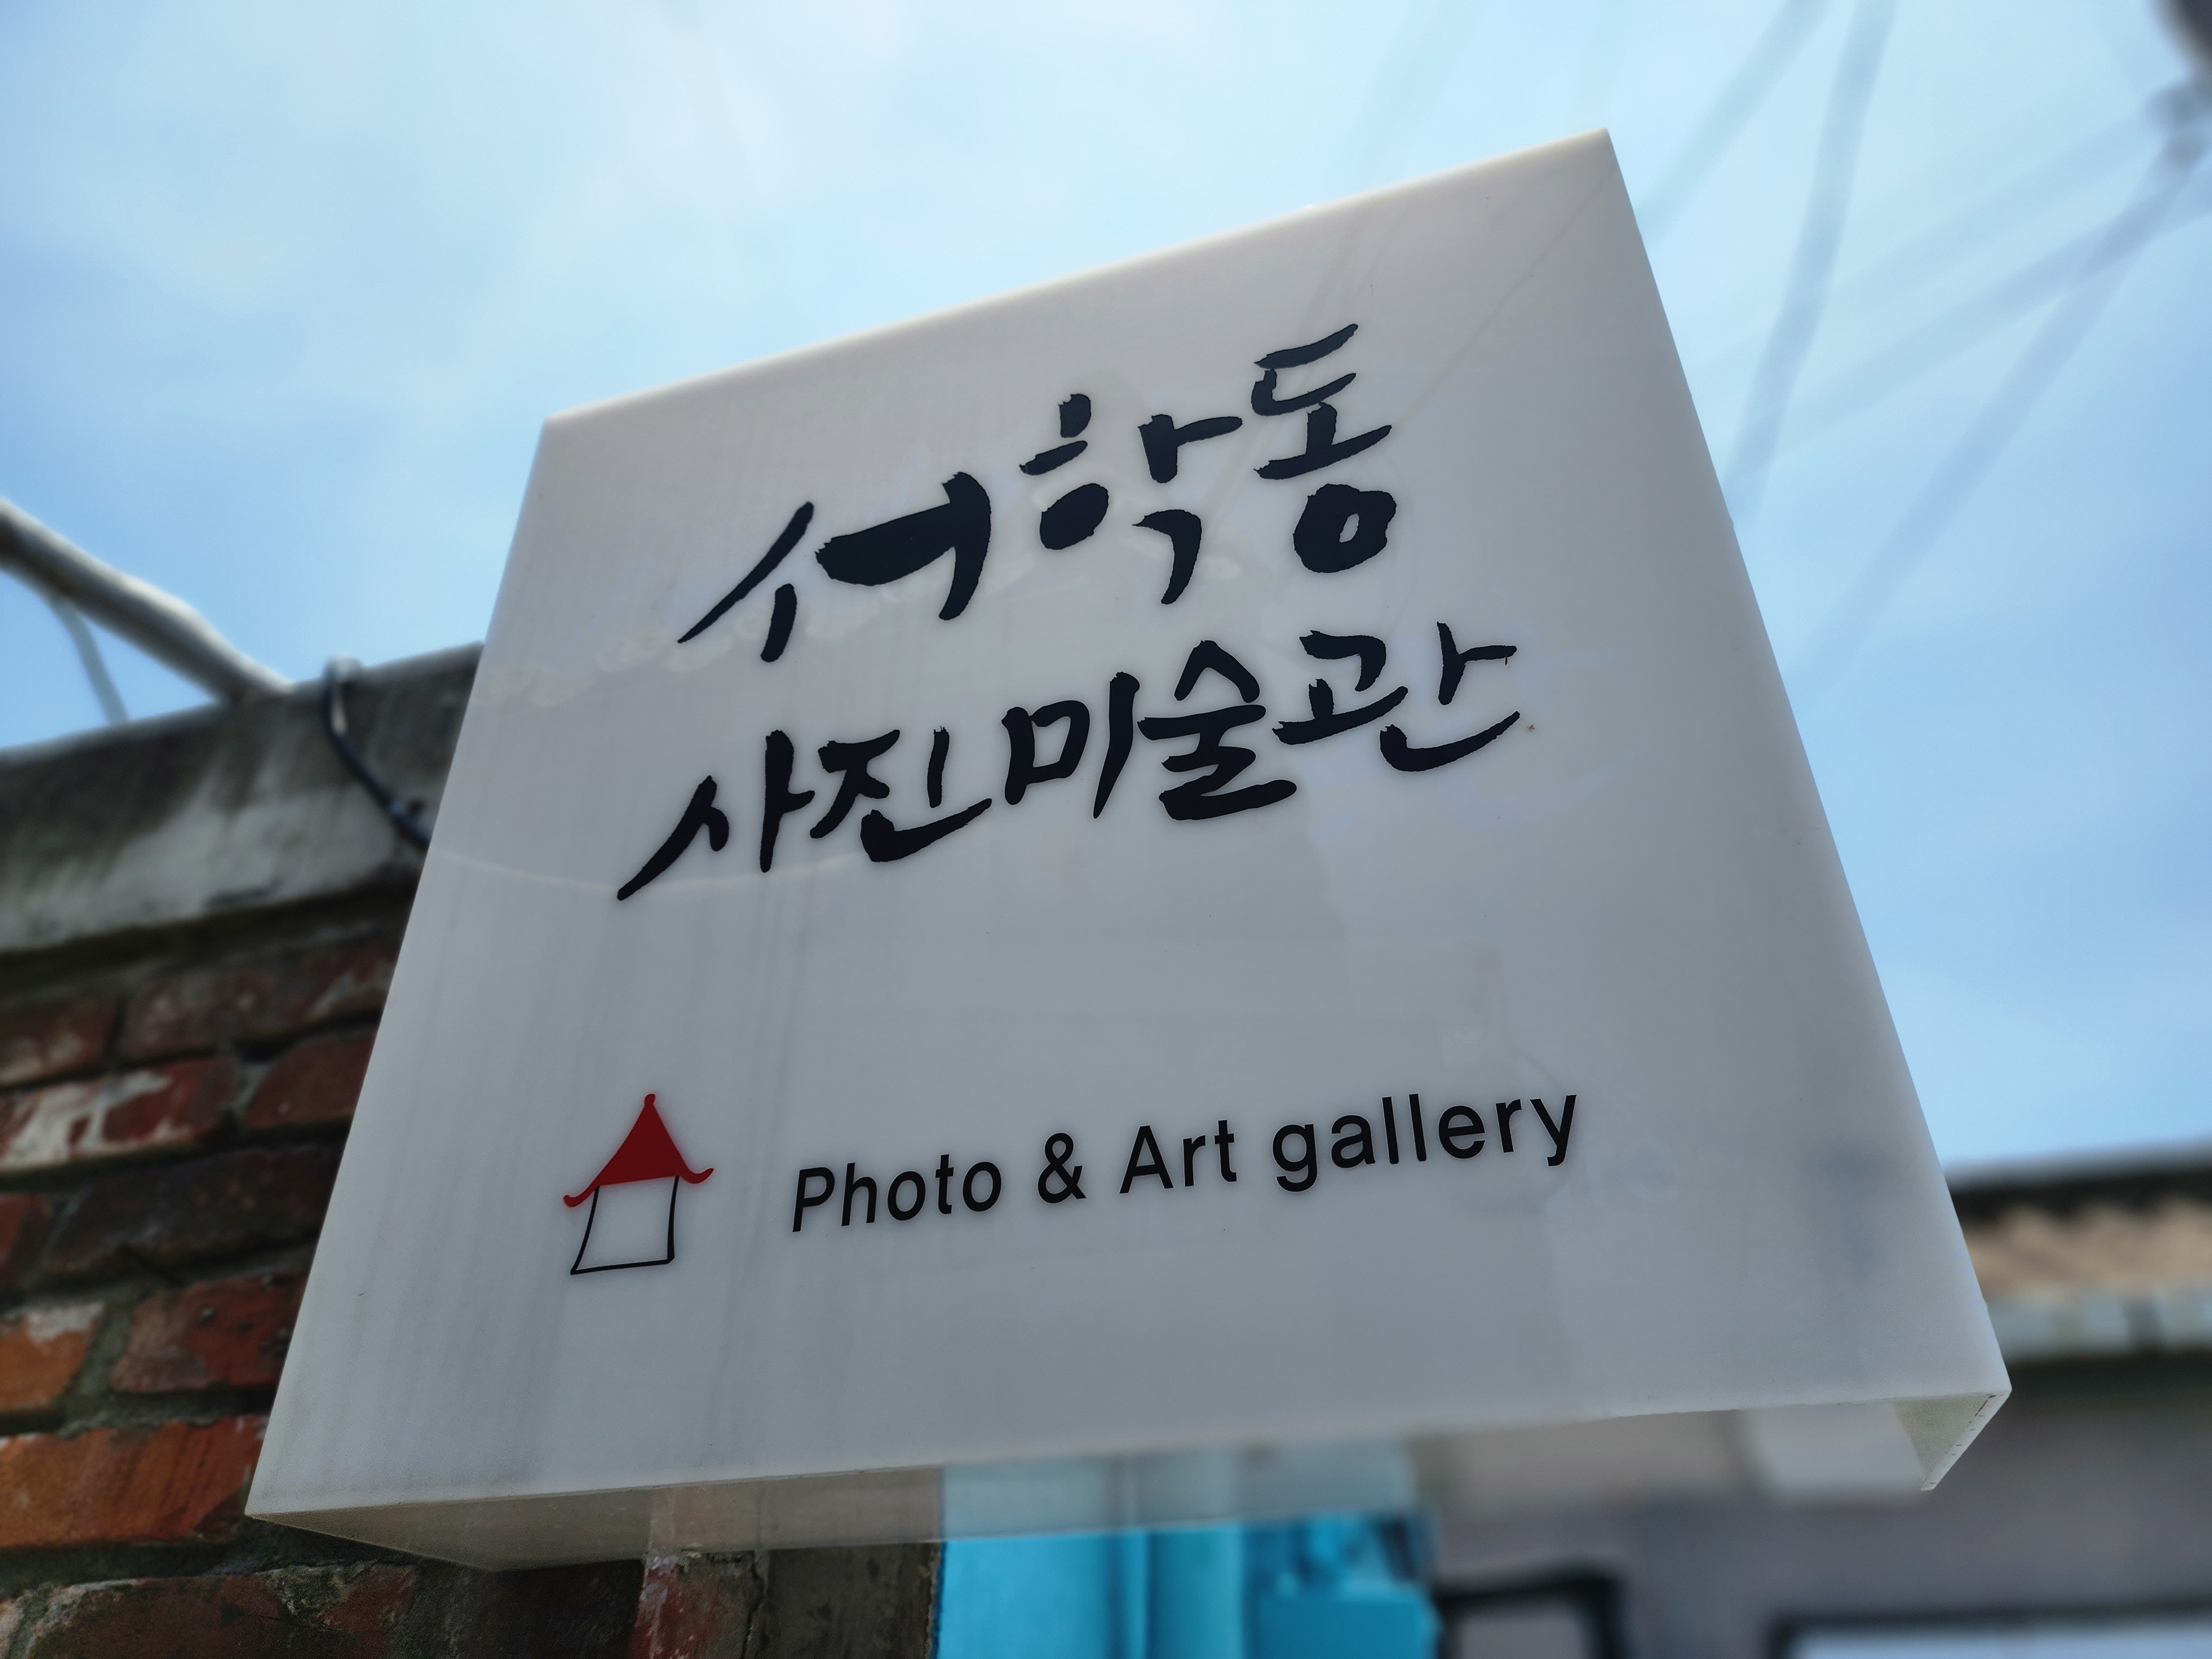 서학동 사진미술관 Photo & Art gallary